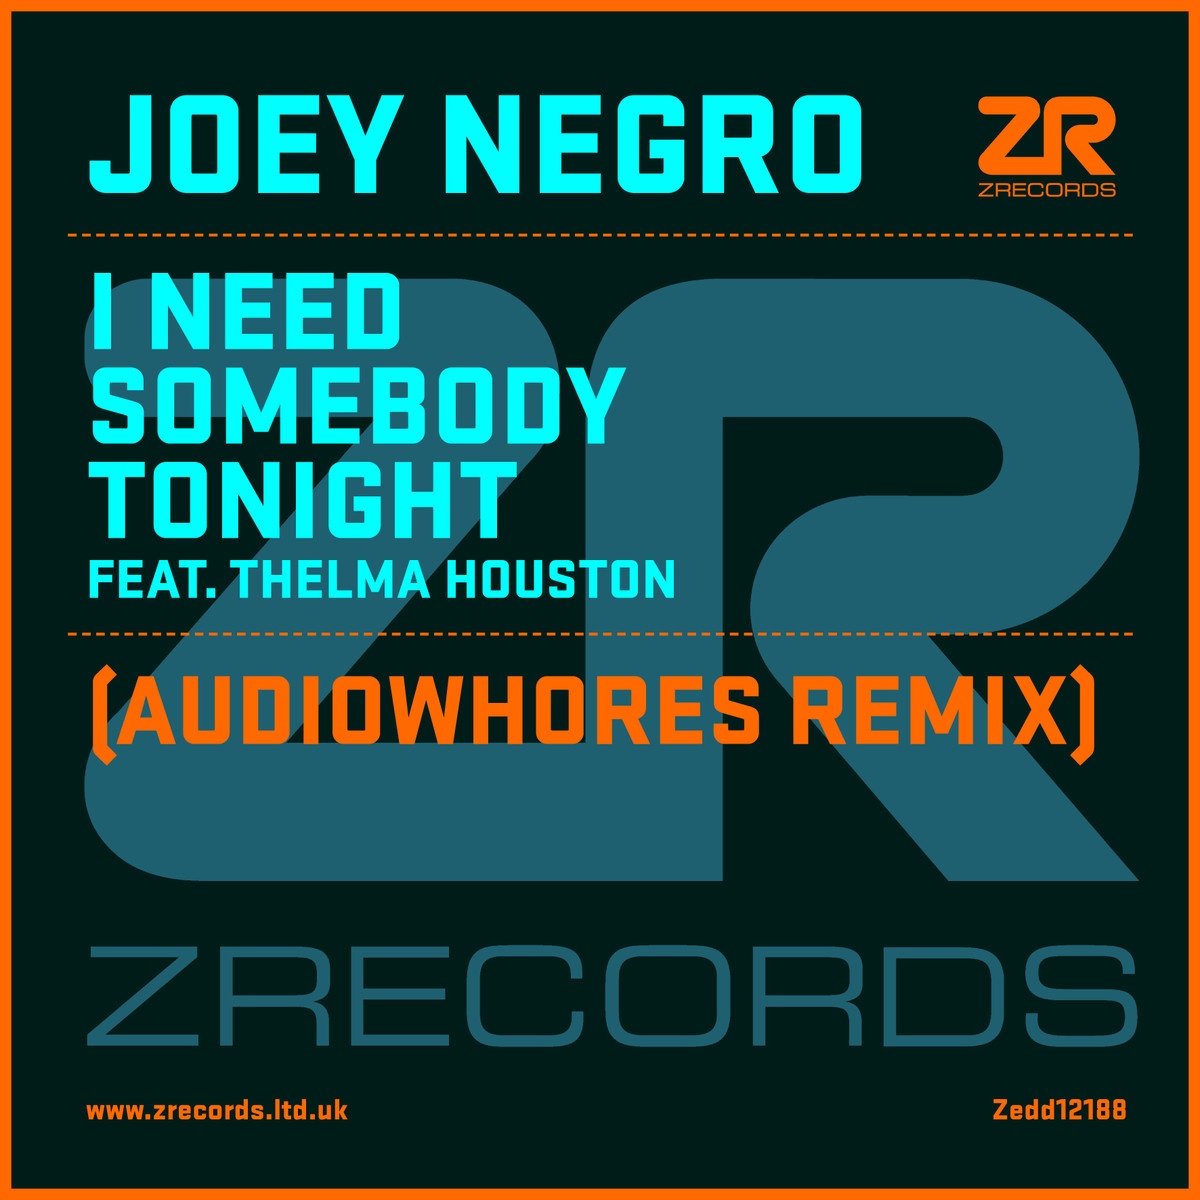 I Need Somebody Tonight Feat. Thelma Houston (Joey Negro Zone Dub)